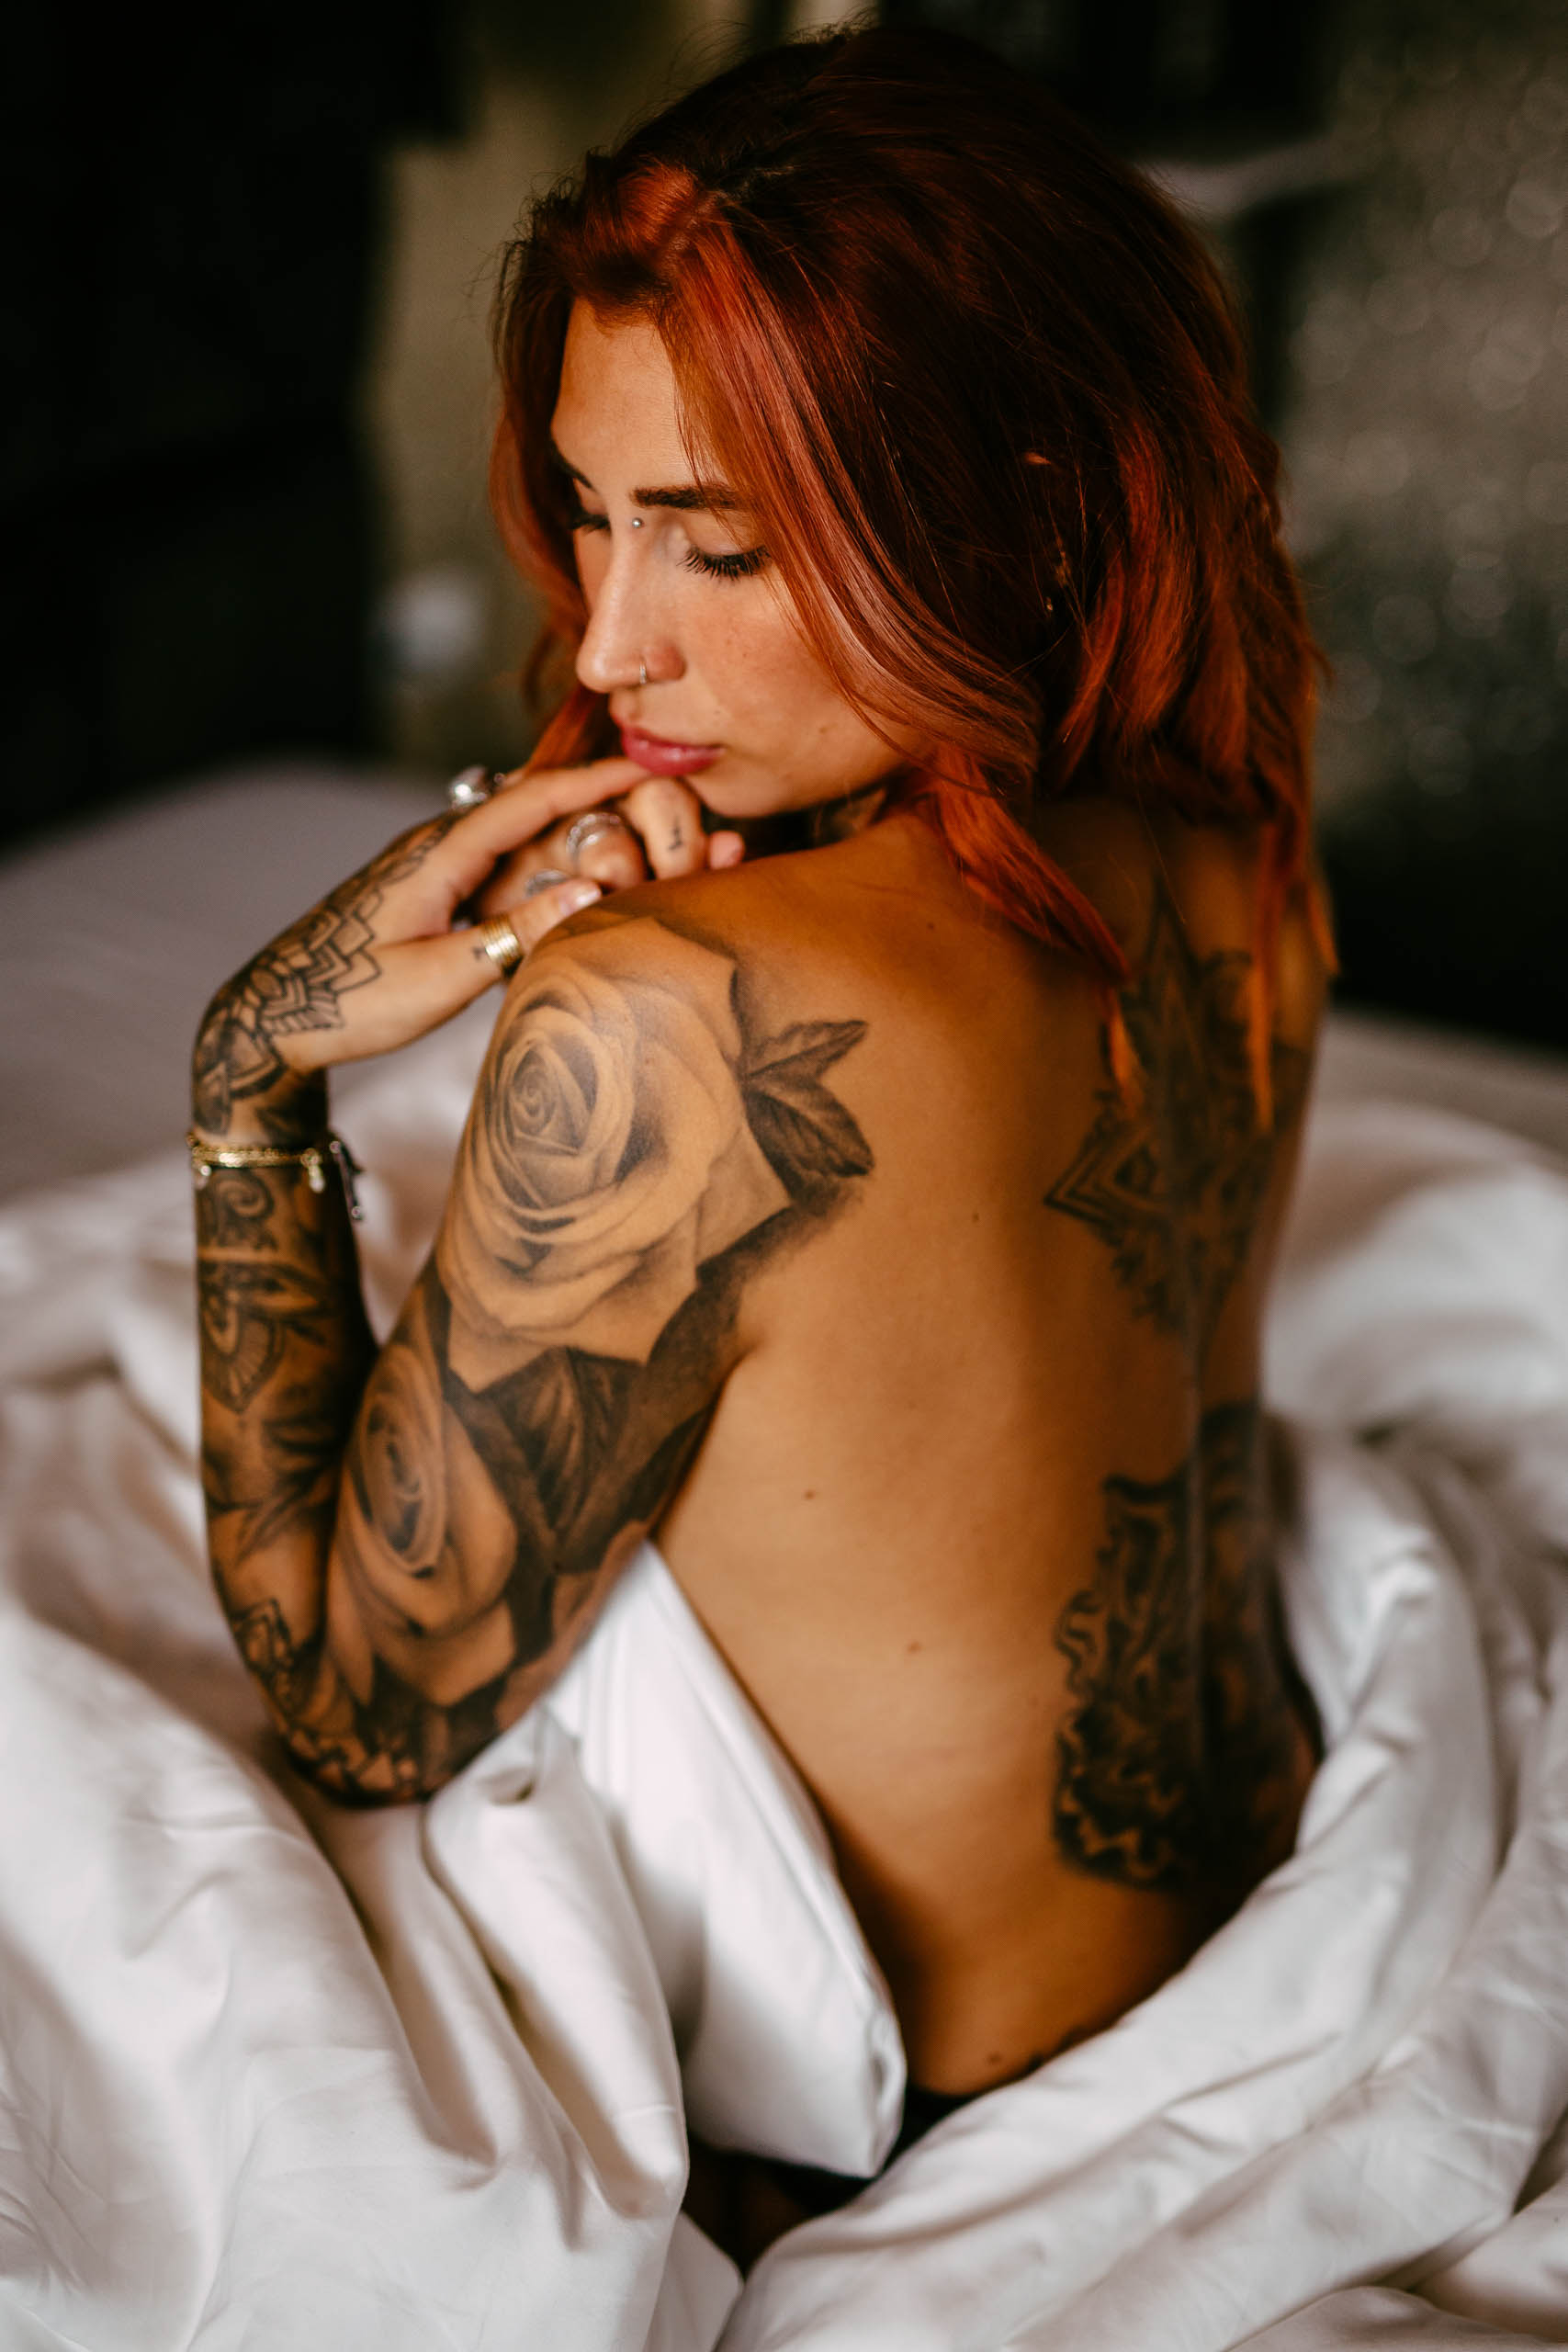 Een vrouw met rood haar en tatoeages liggend op een bed.